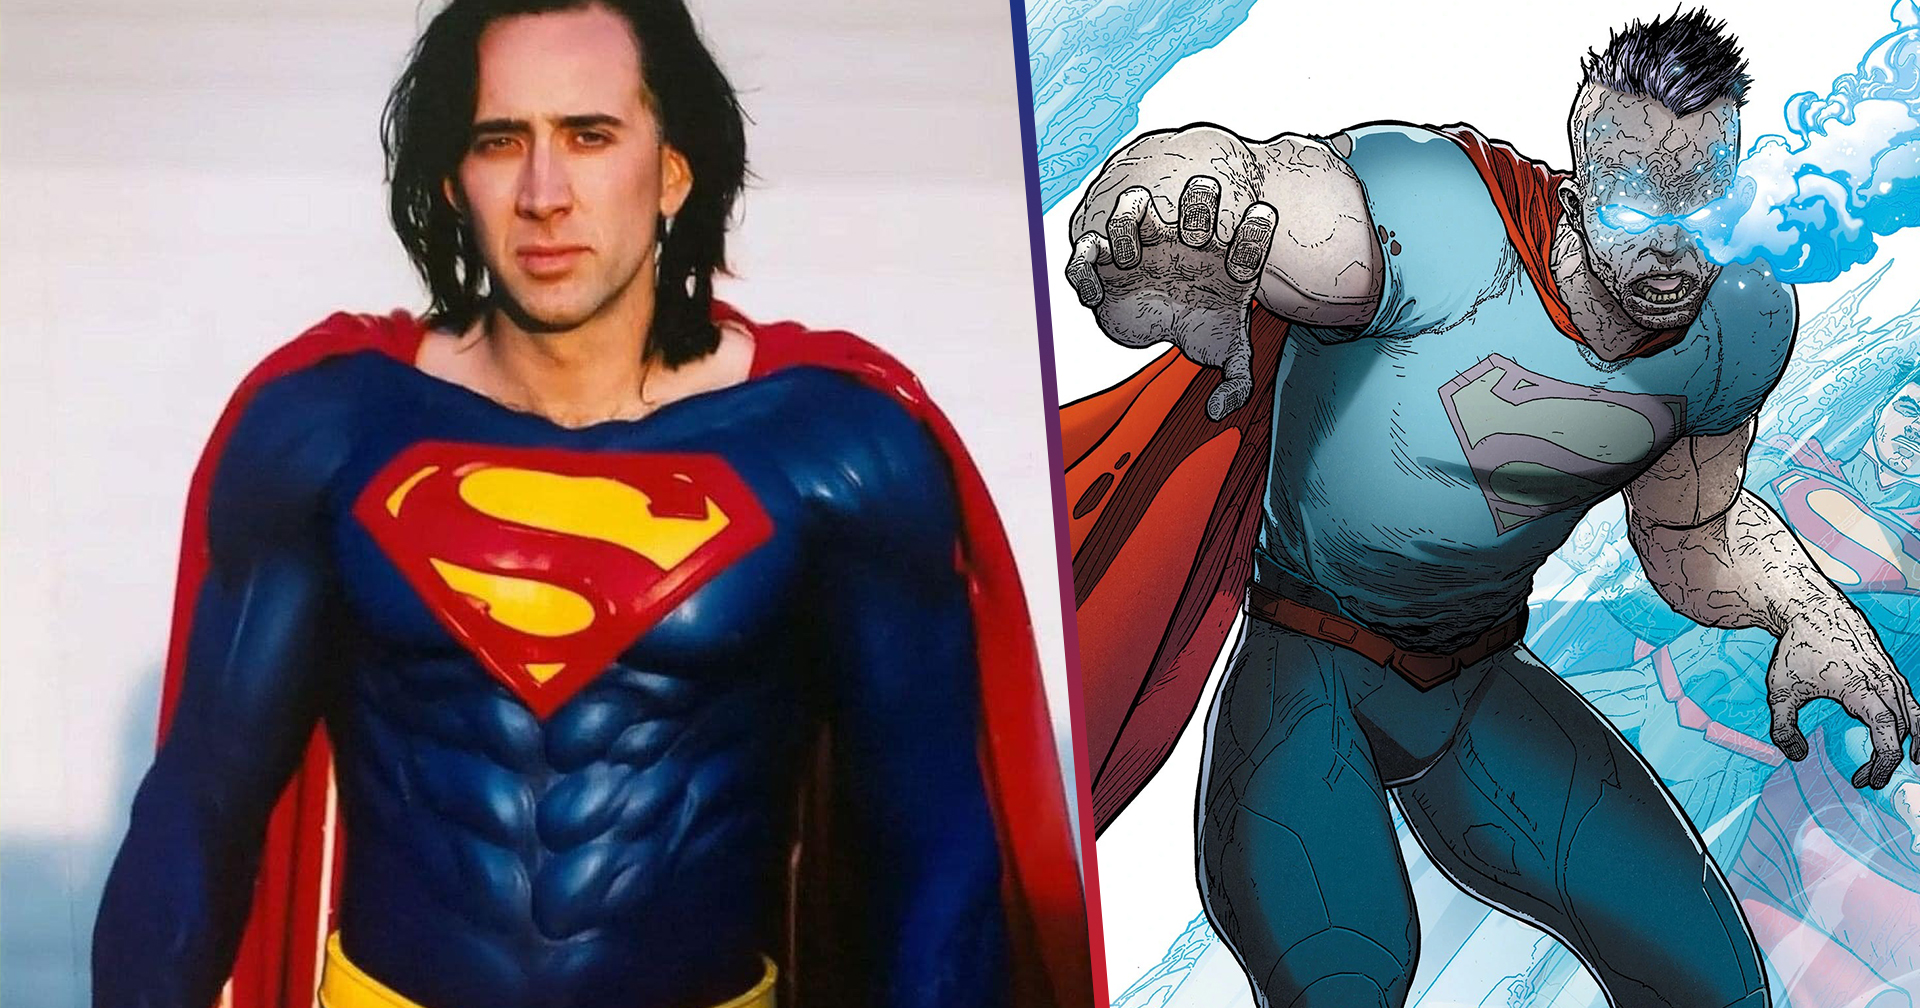 ไปอีกหนึ่ง Warner Bros. สั่งยกเลิกโปรเจกต์ซีรีส์ DC ที่จะดึง Nicolas Cage กลับมาเป็น ‘Superman’ อีกครั้ง!